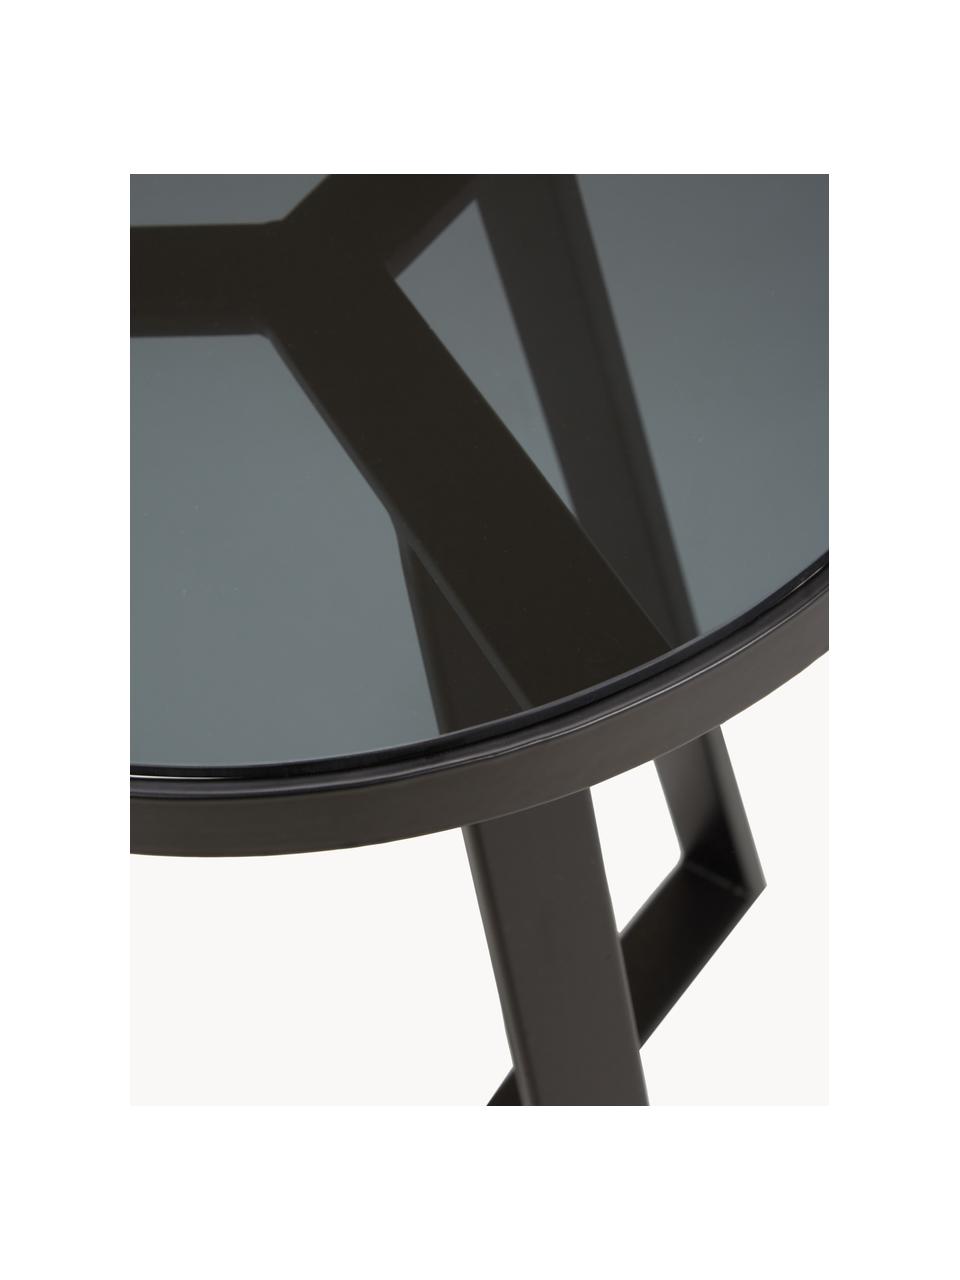 Beistelltisch Fortunata mit Glasplatte, Tischplatte: Glas, gehärtet, Gestell: Metall, gebürstet, Transparent, Schwarz, Ø 40 x H 51 cm